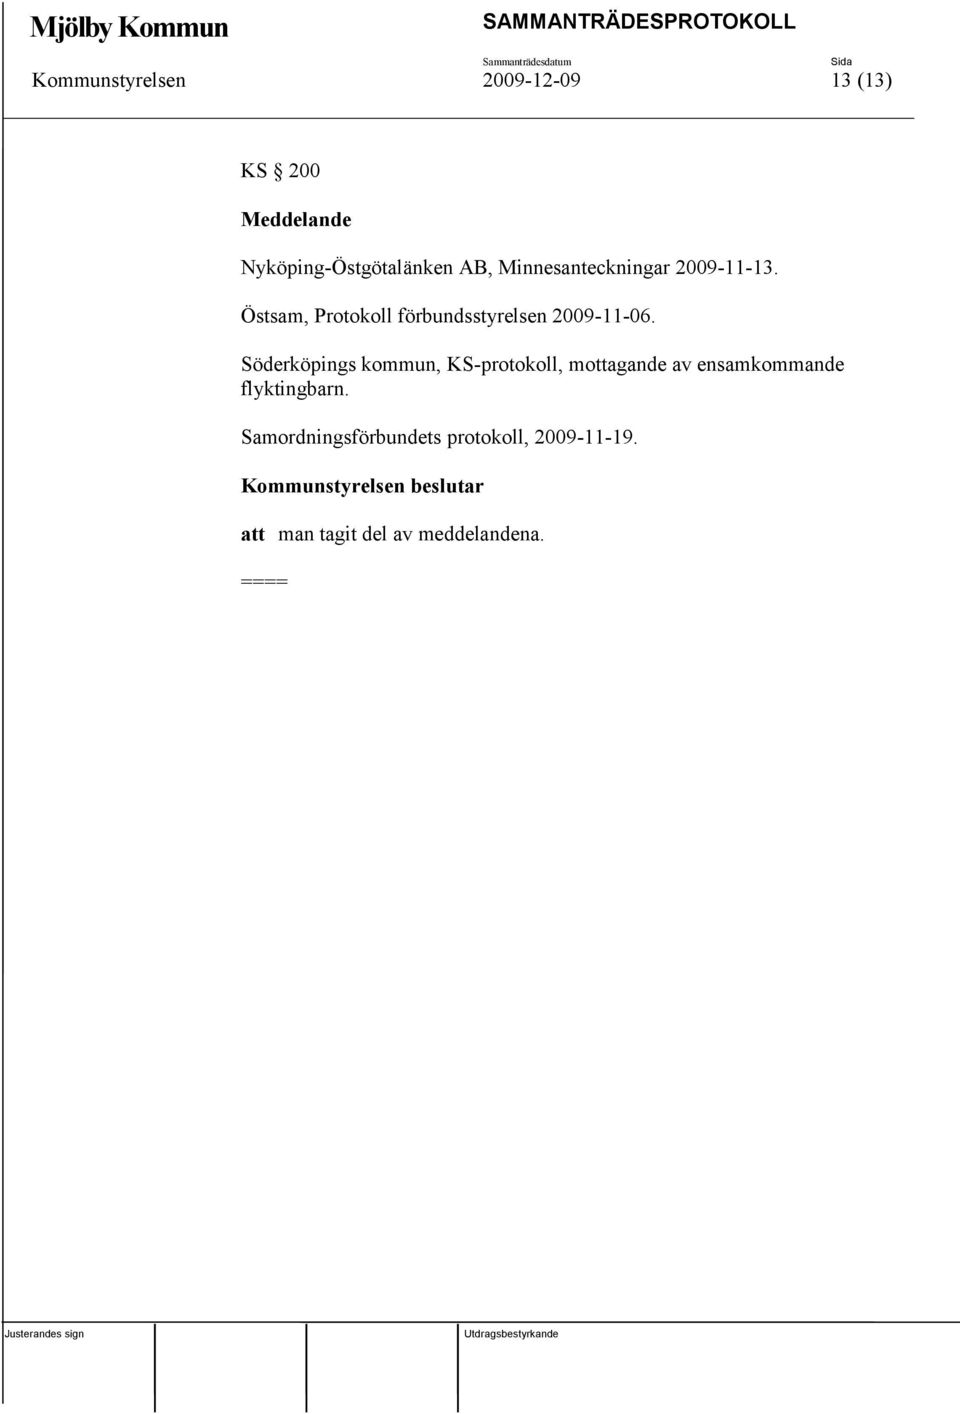 Östsam, Protokoll förbundsstyrelsen 2009-11-06.